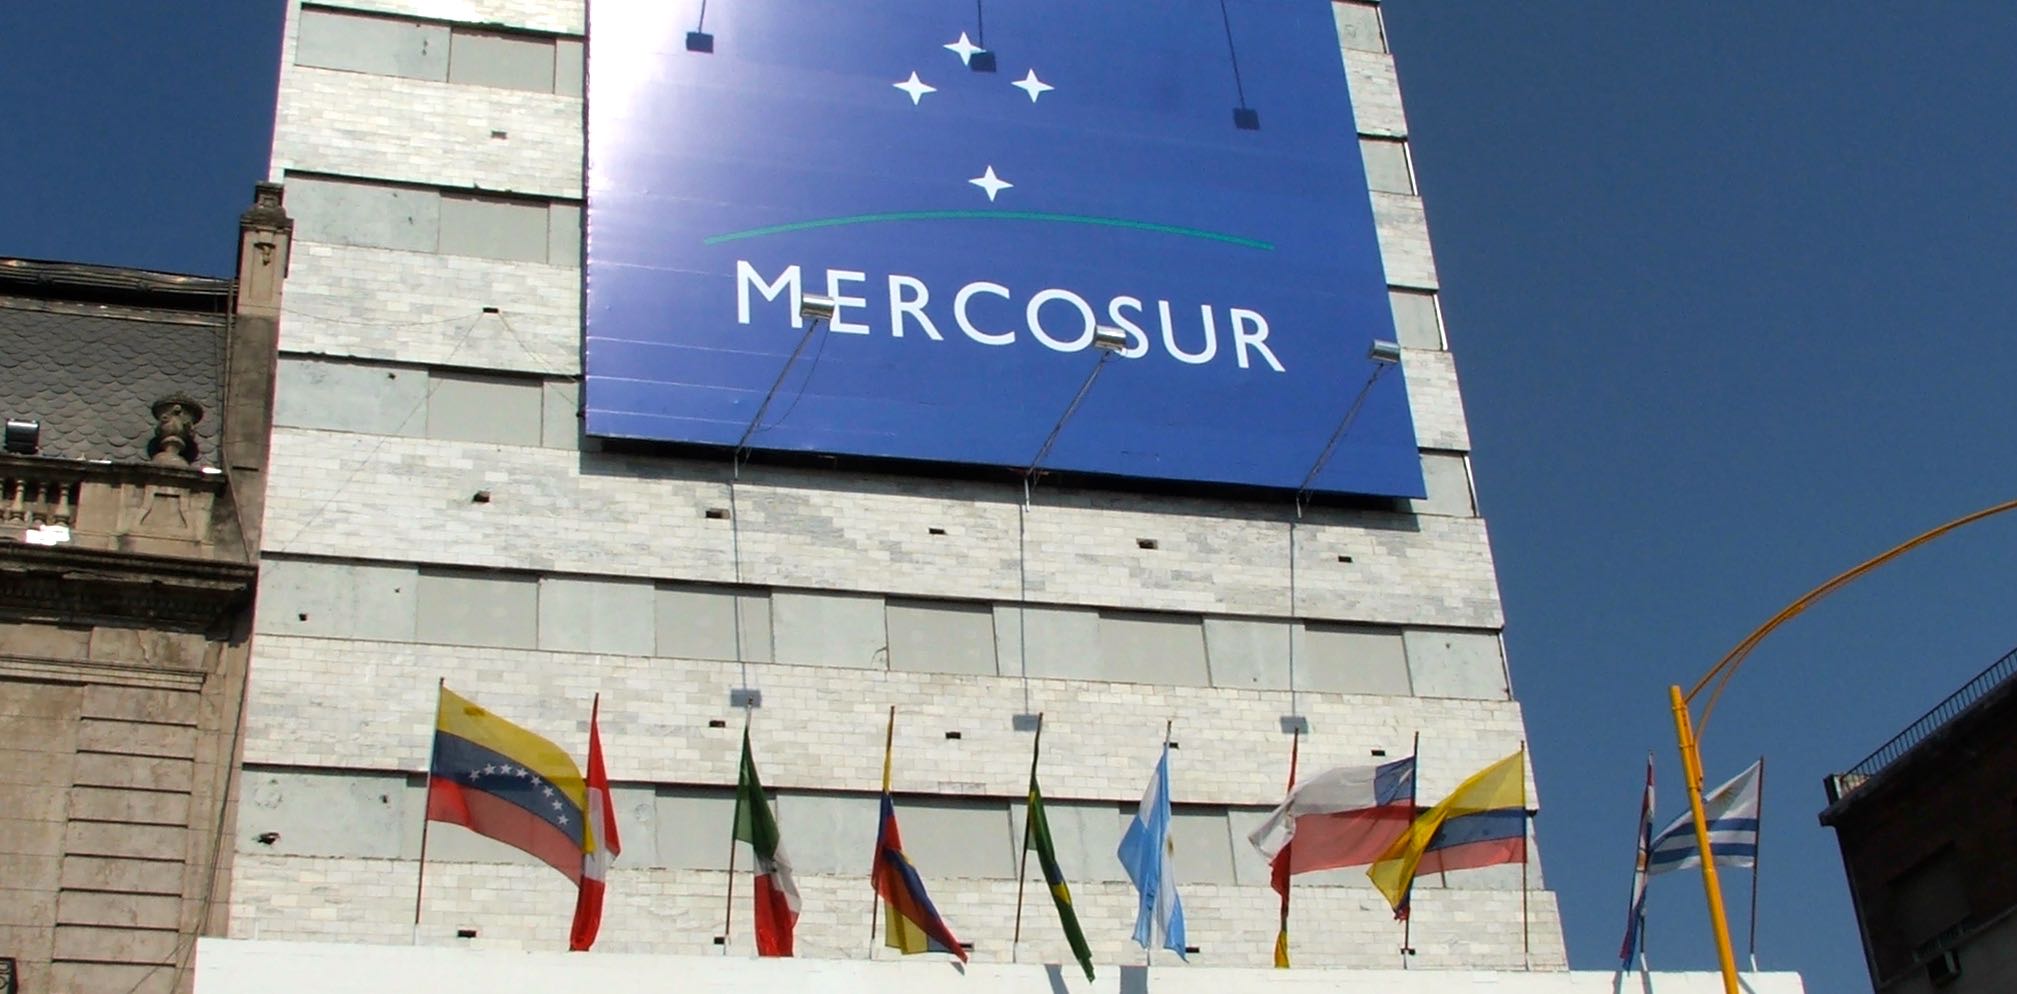 Las automotrices se verían afectadas por las medidas tomadas en el Mercosur